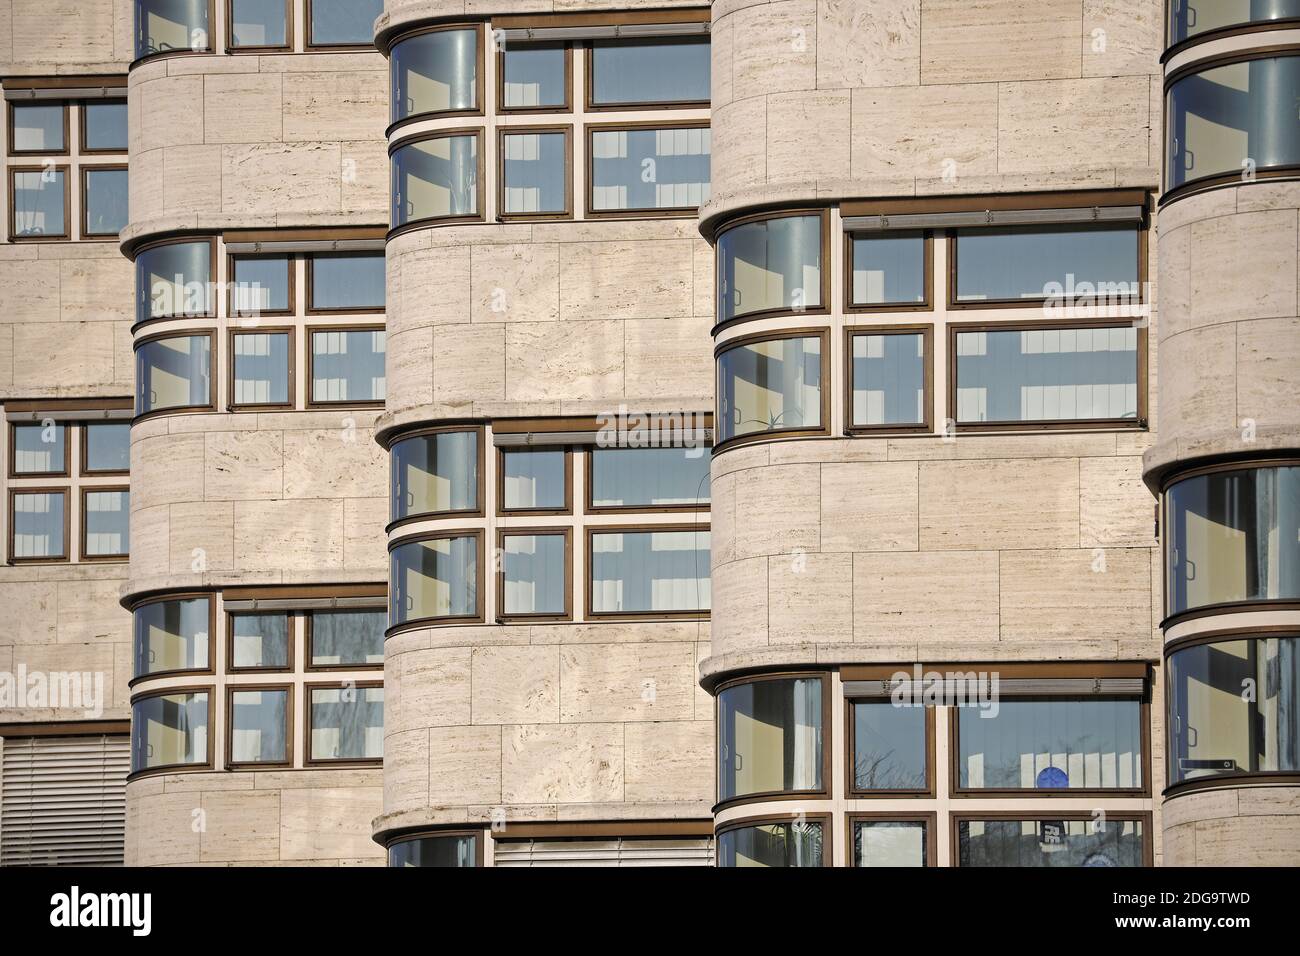 Conchiglia, Fassadendetail, Hauptsitz der Berliner Gasag, erbaut 1932 vom Archithekt Fahrenkamp, Berlin, Deutschland, Europa Foto Stock